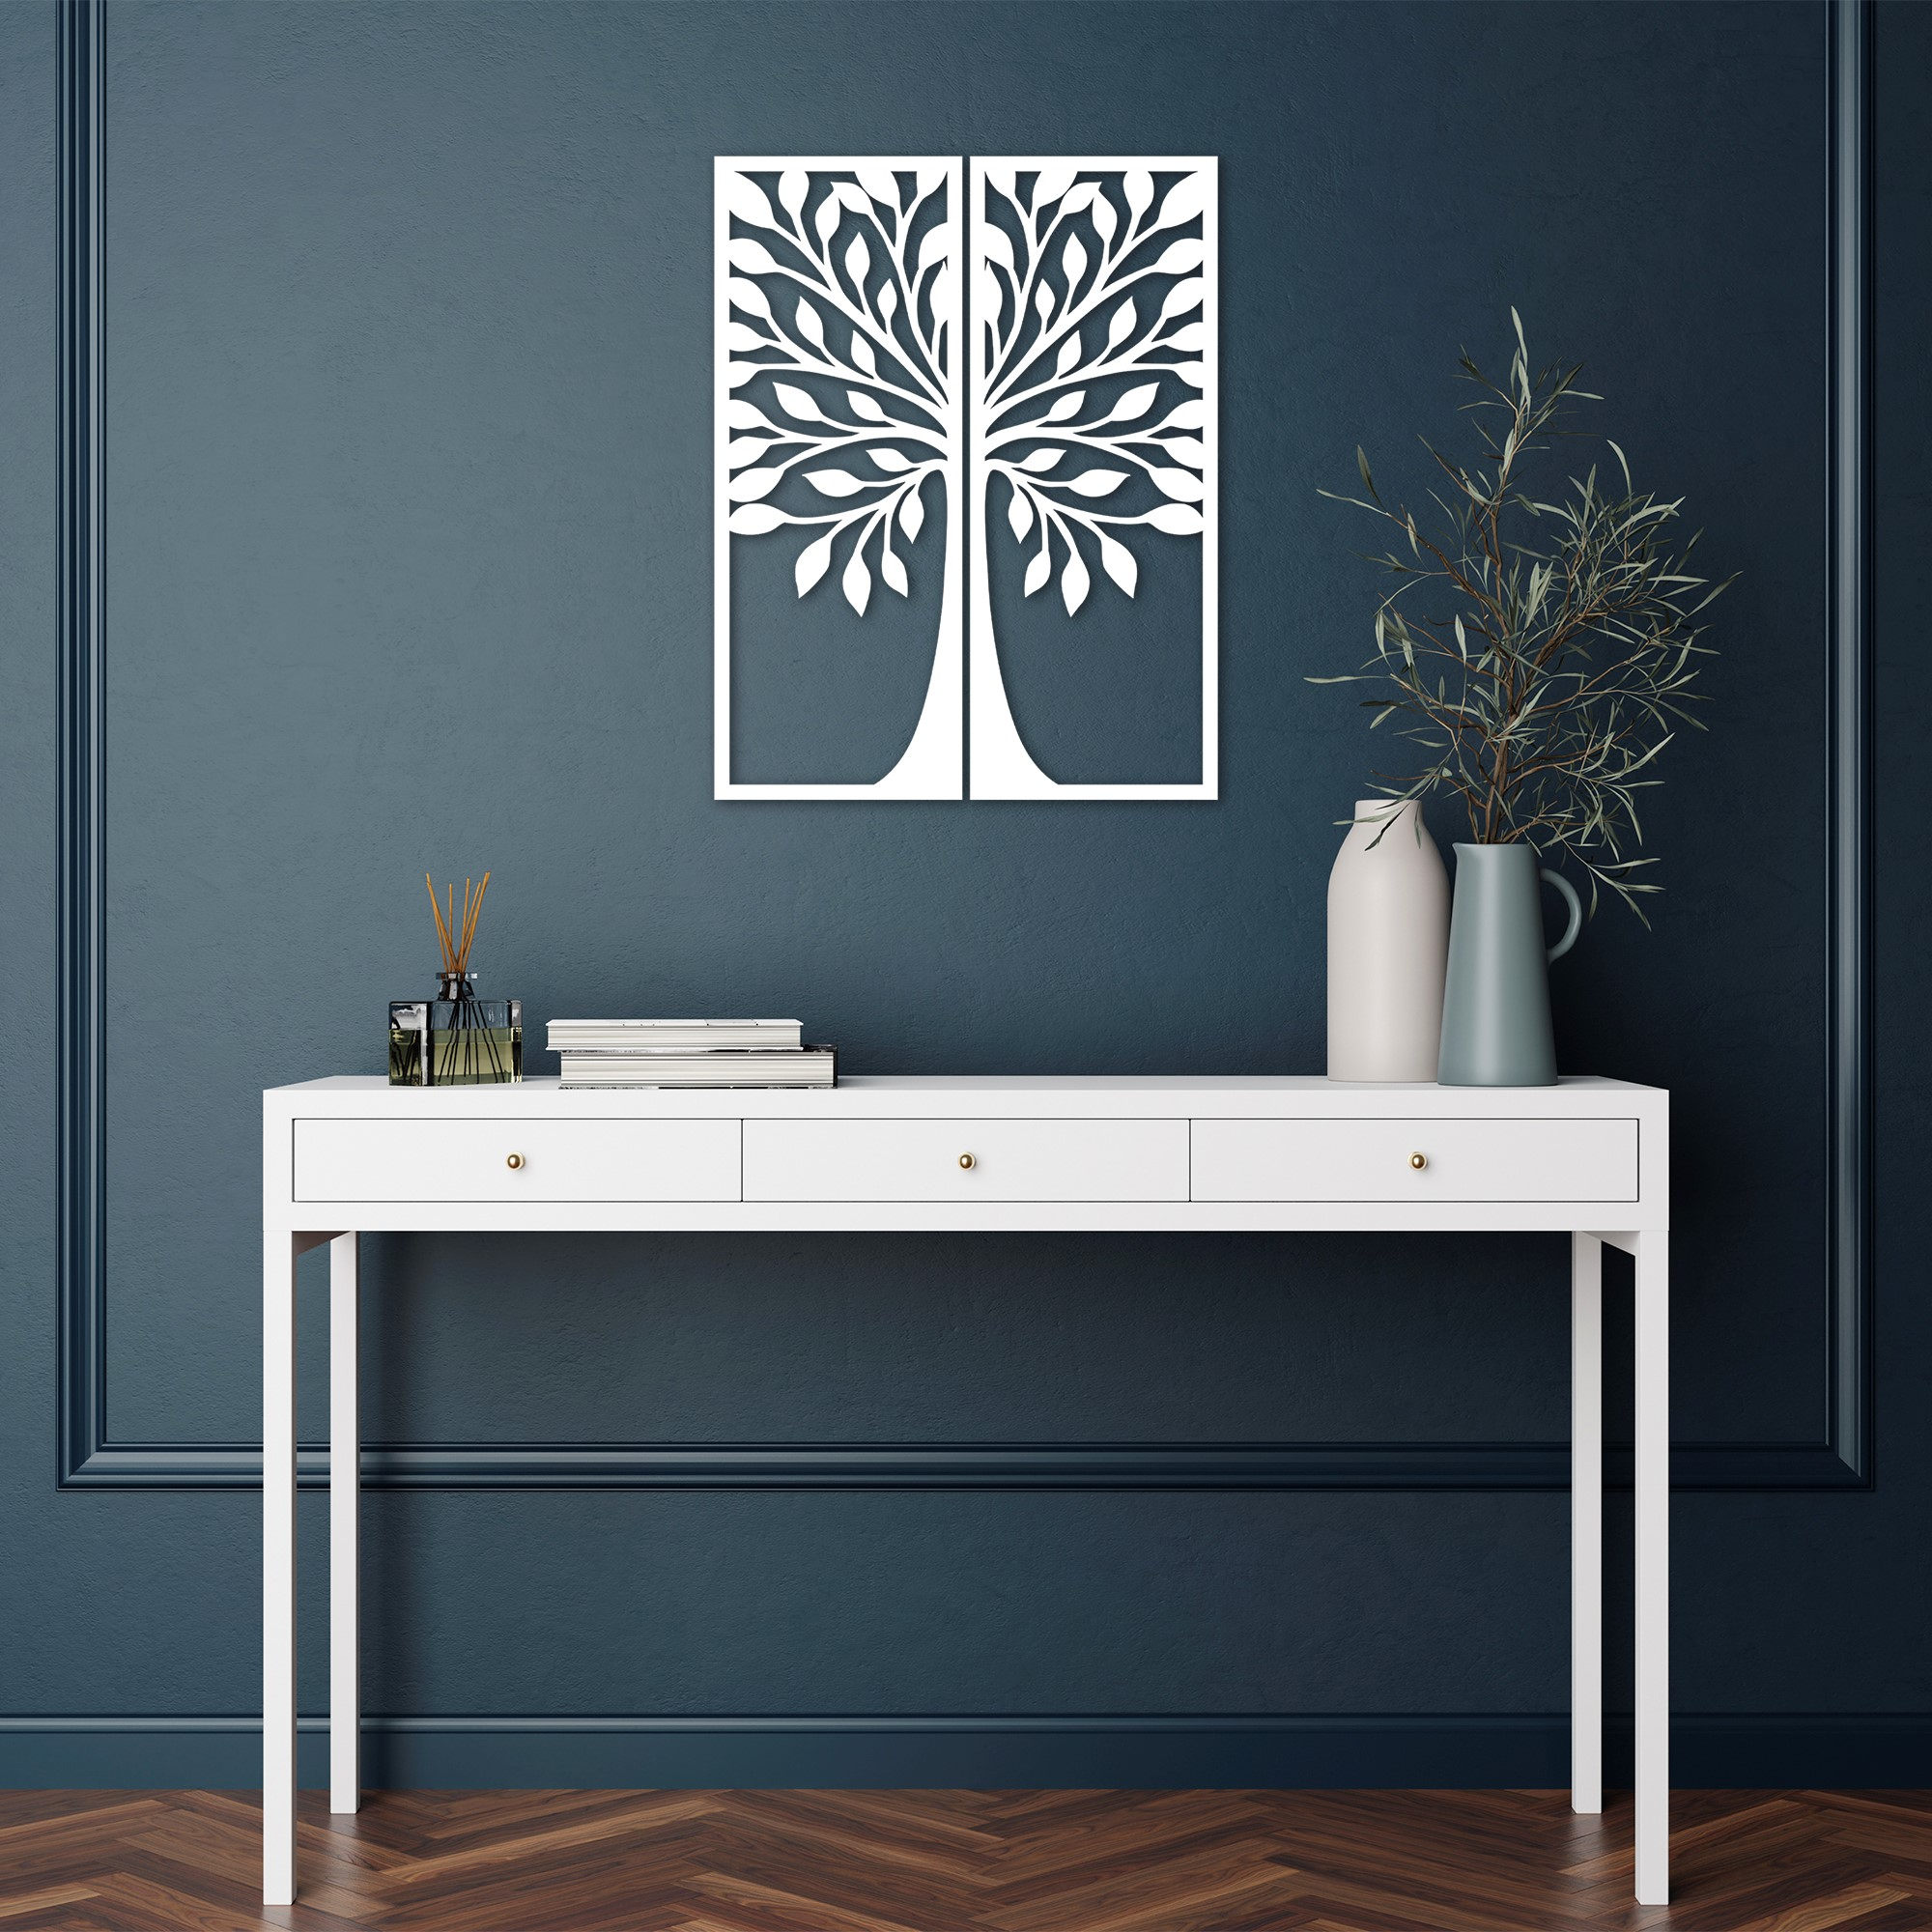 ASIR Nástěnná dekorace dřevo LISTNATÝ STROM bílý 50 x 65 cm